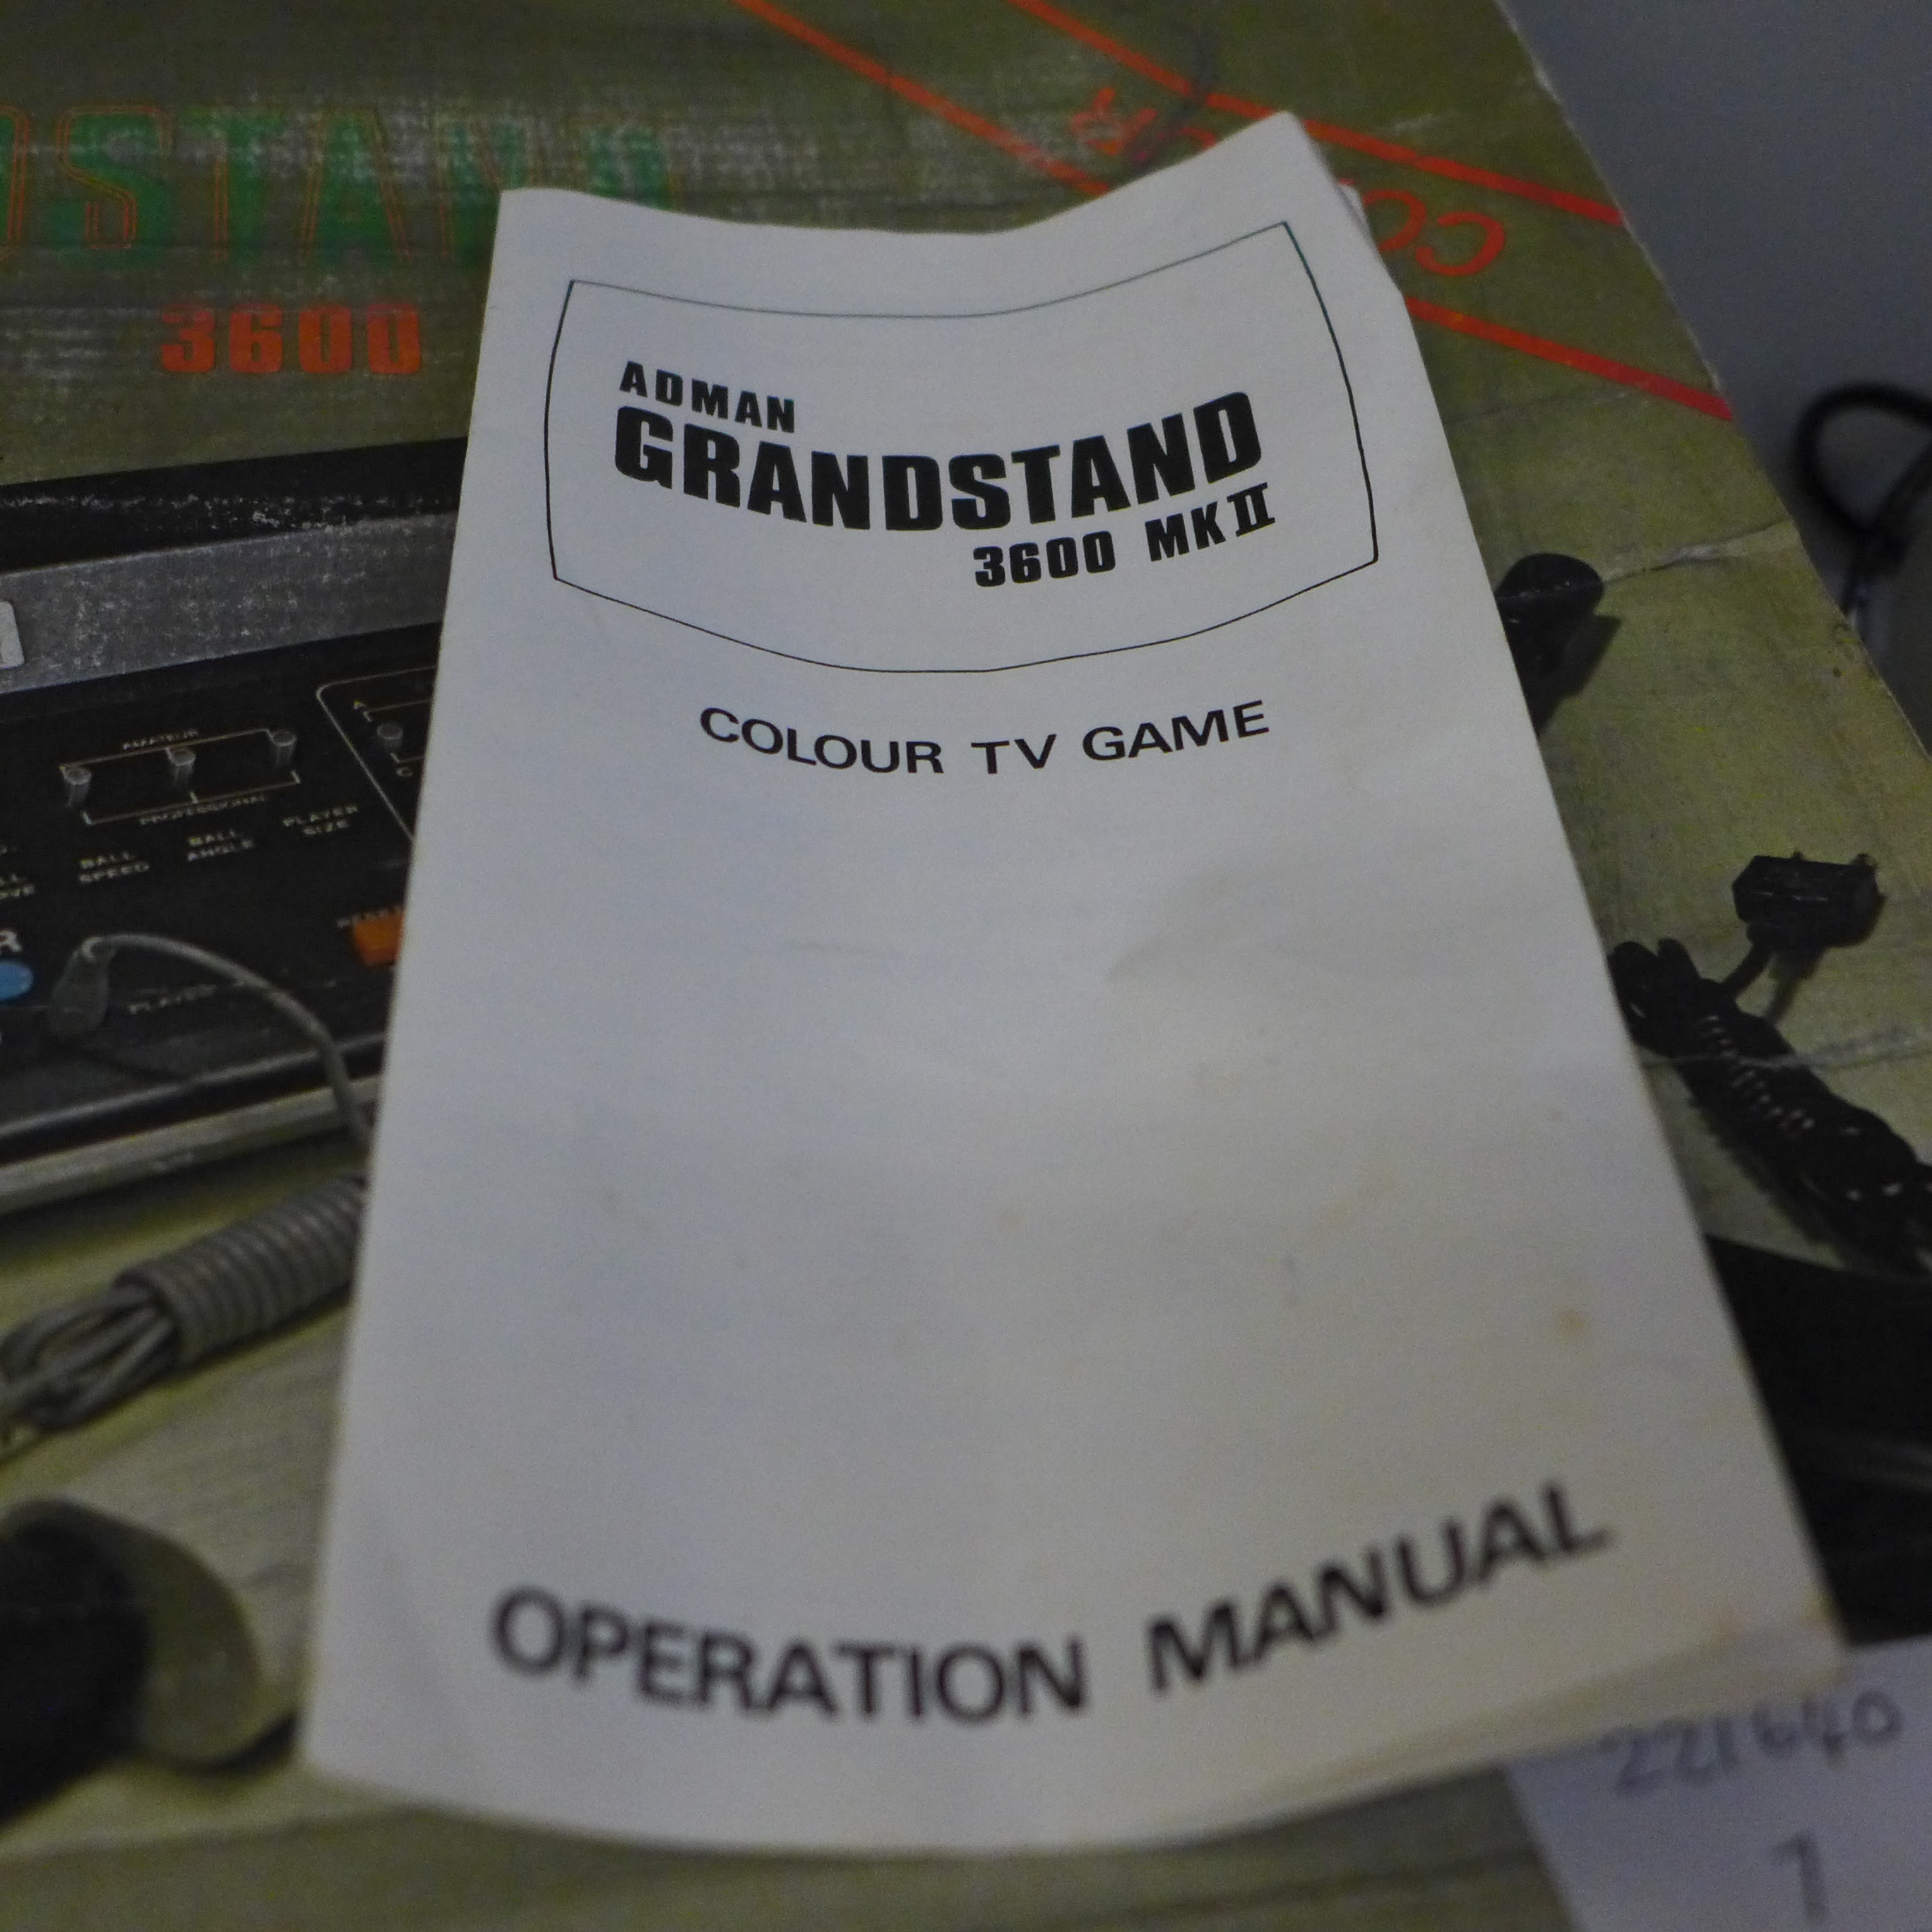 An Adman Grandstand TV game, 3600 MKII - Bild 3 aus 3